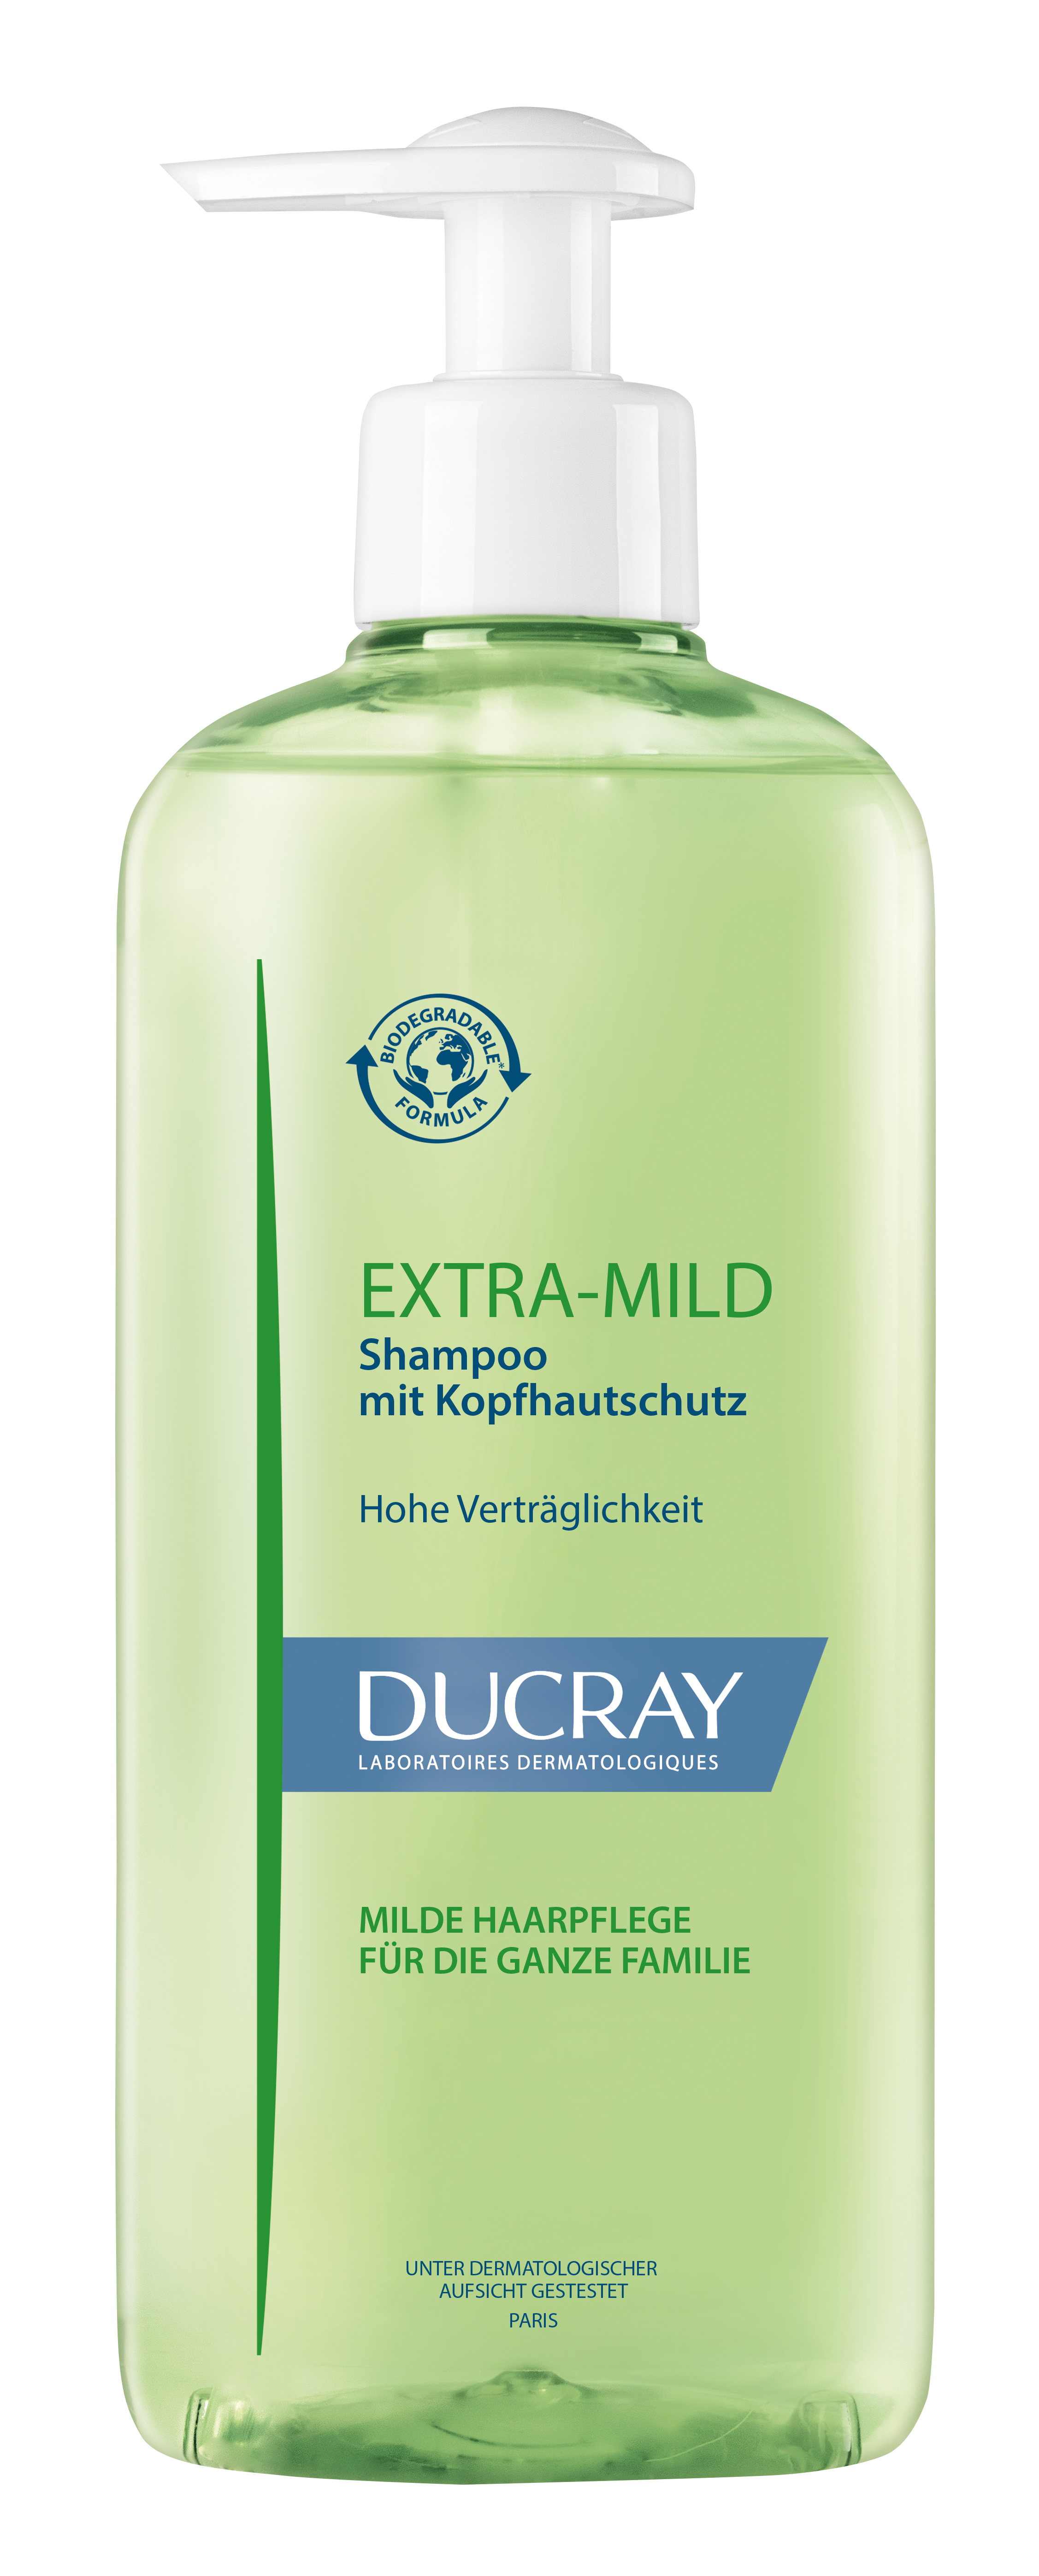 Ducray – EXTRA MILD Shampoo mit Kopfhautschutz 400ml